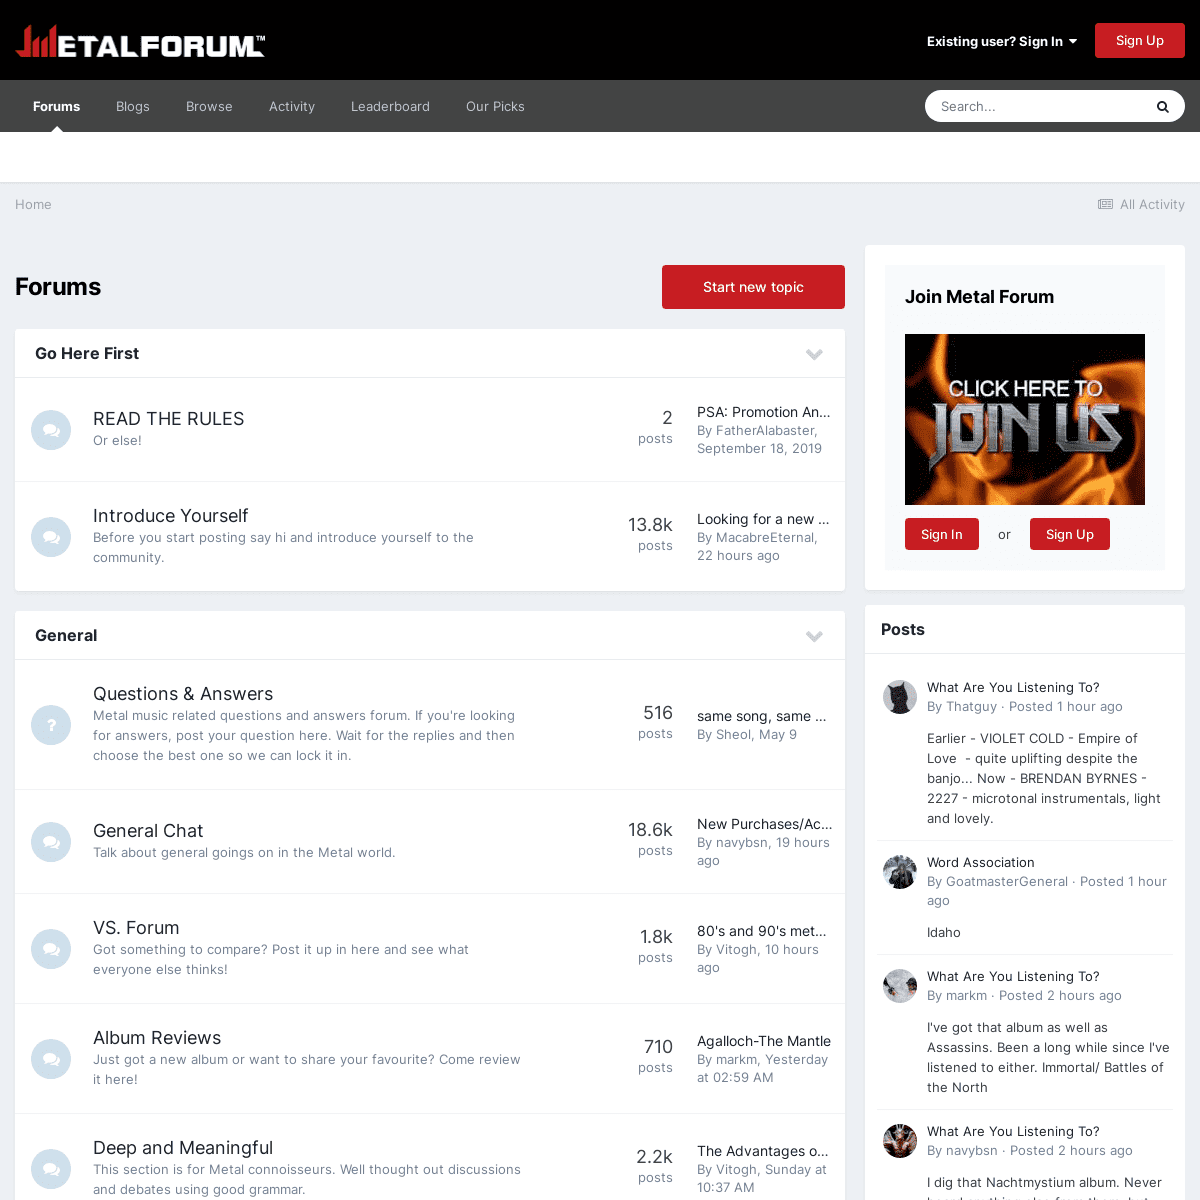 A complete backup of https://metalforum.com